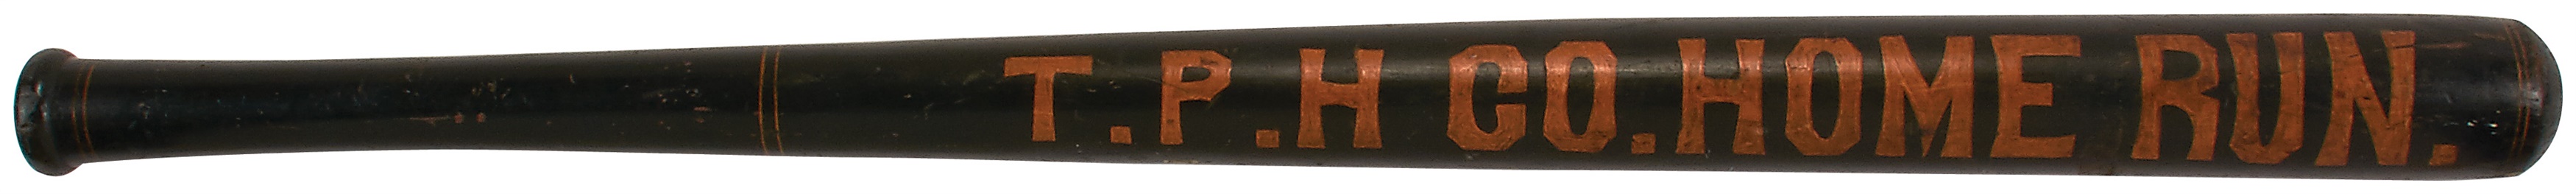 - 1880s "Home Run" Baseball Bat Trade Sign